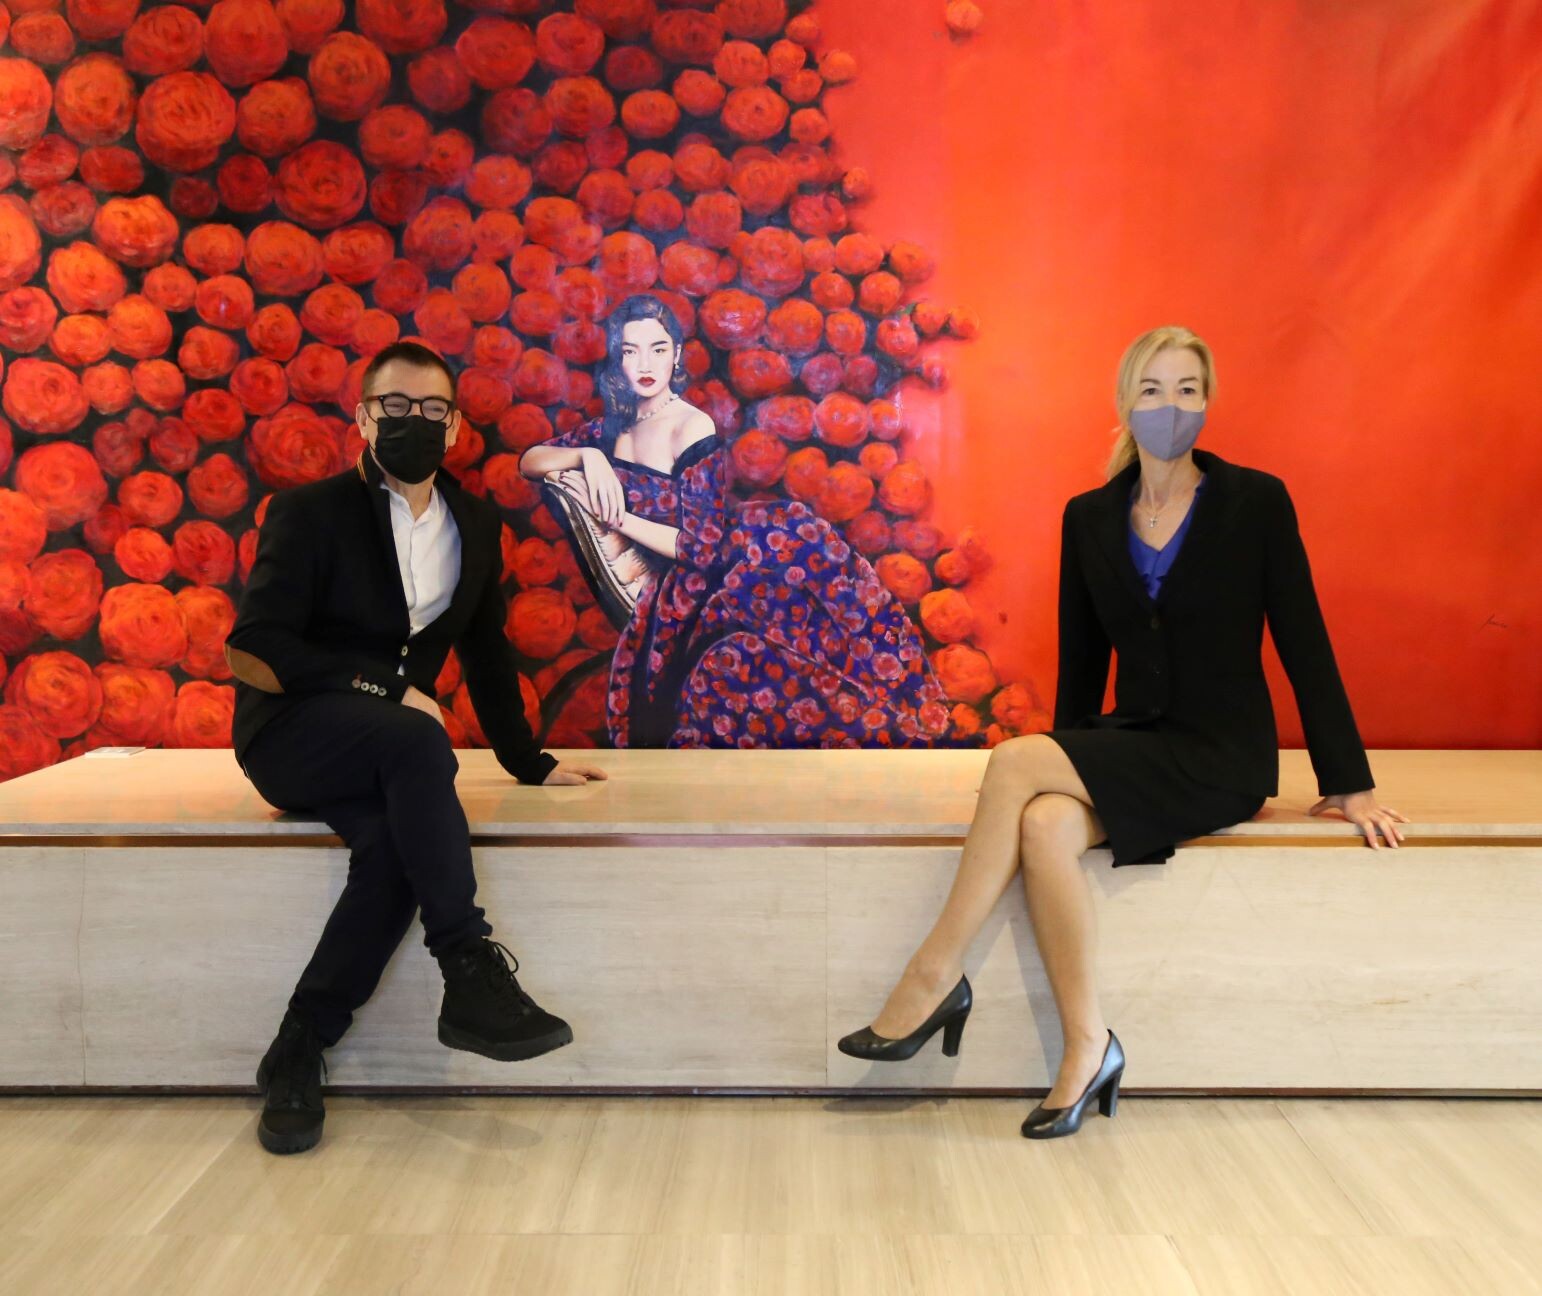 โรงแรมฮิลตัน สุขุมวิท กรุงเทพฯ ร่วมเฉลิมฉลองวันสตรีสากล จัดแสดงนิทรรศการศิลปะ ร่วมกับศิลปินชาวอิตาเลียน ซาวาริโอ ลุคชี ตลอดเดือนมีนาคม